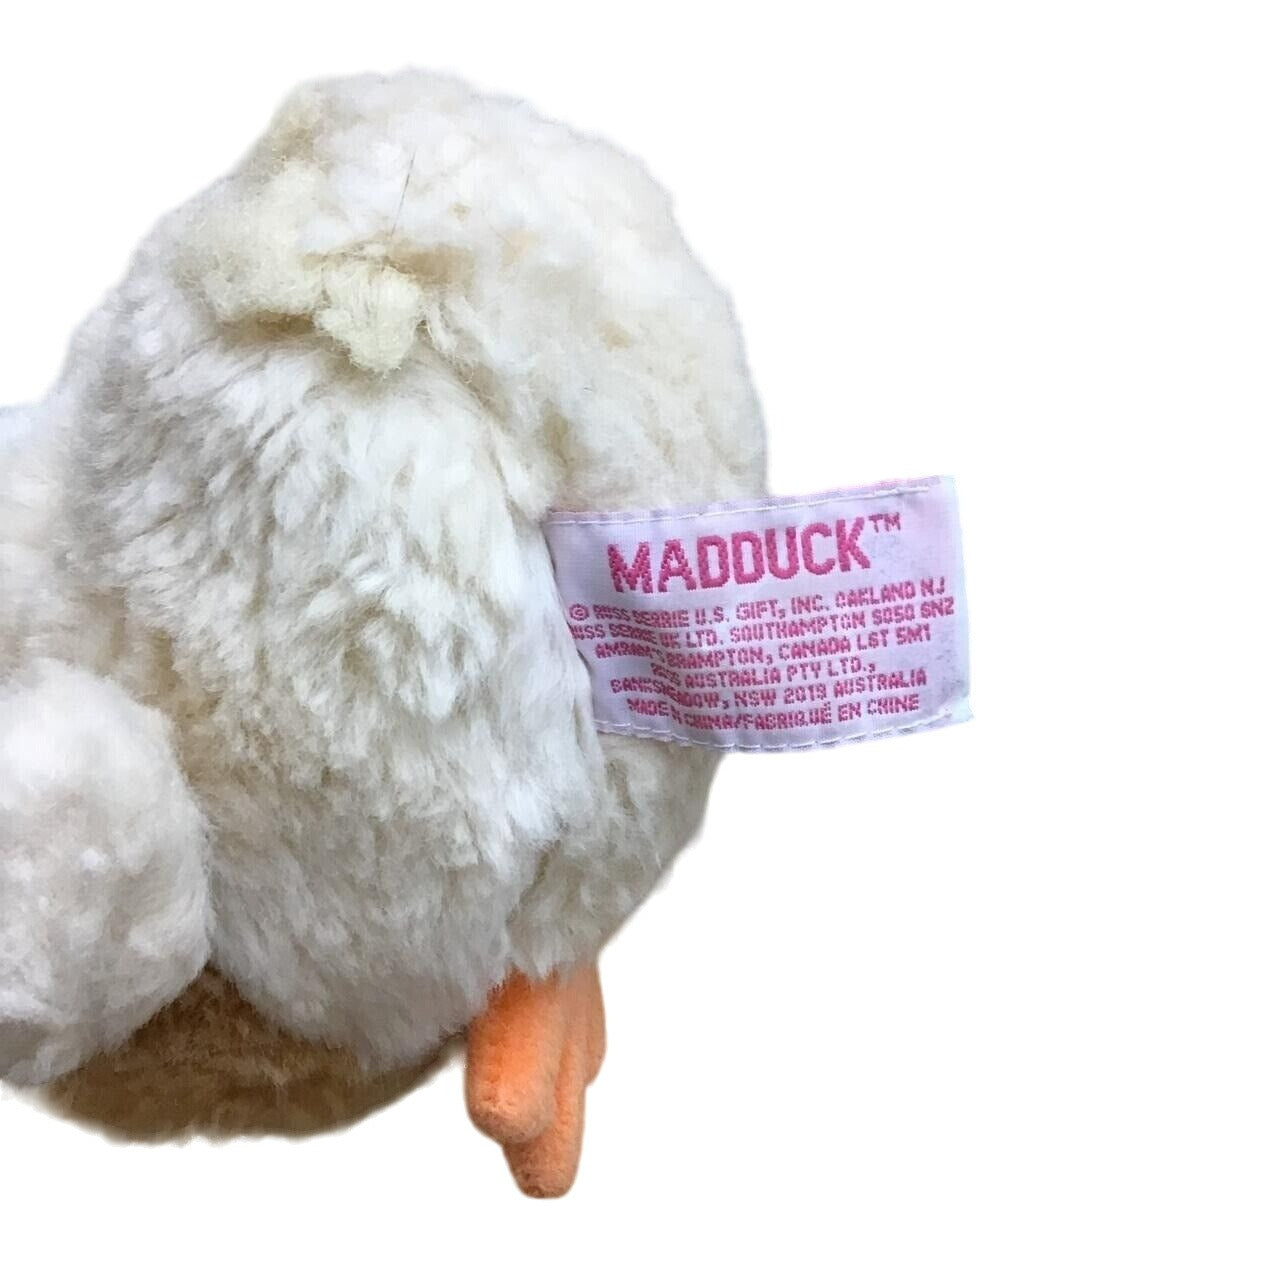 Madduck Stuffed Animal -954